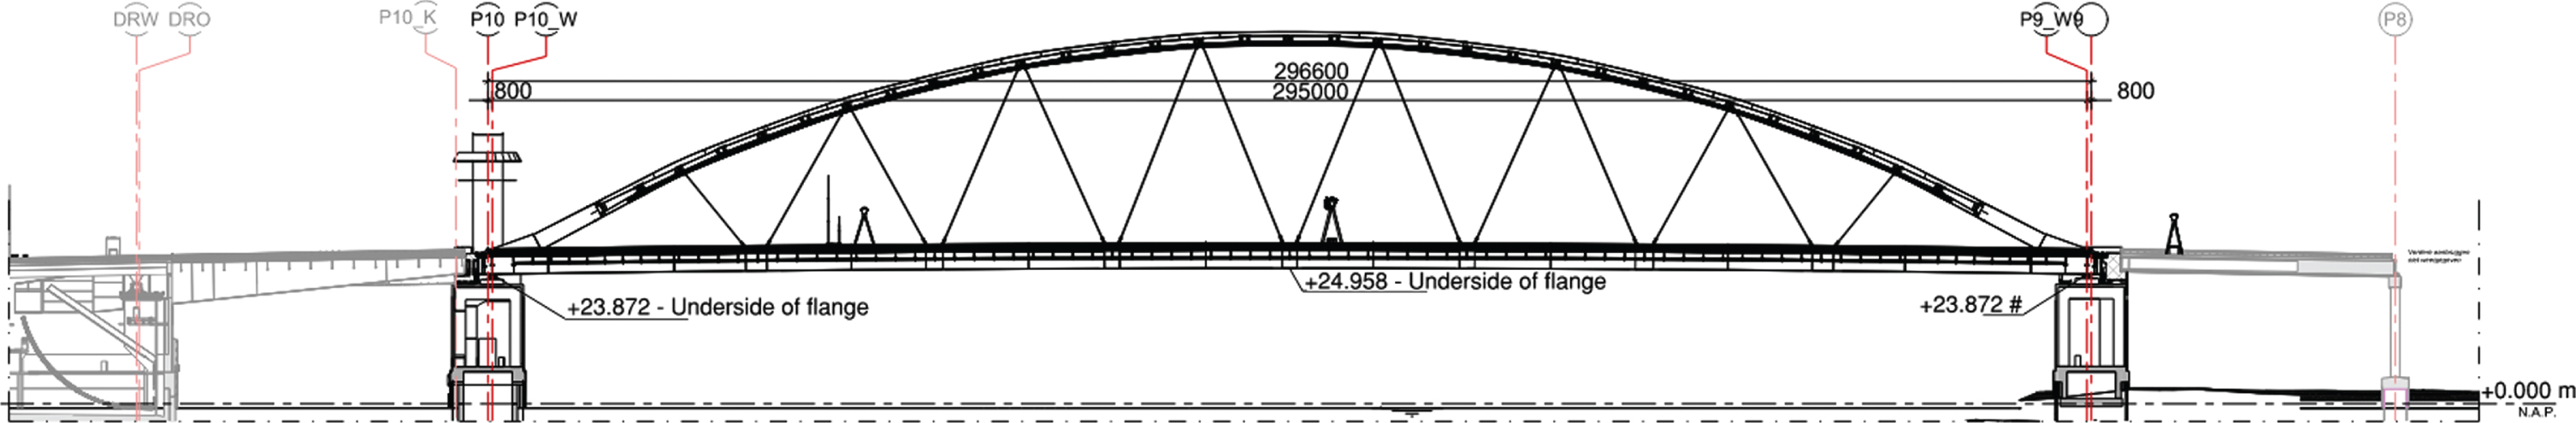 Elevation of the Van Brienenoord Bridge existing situation.